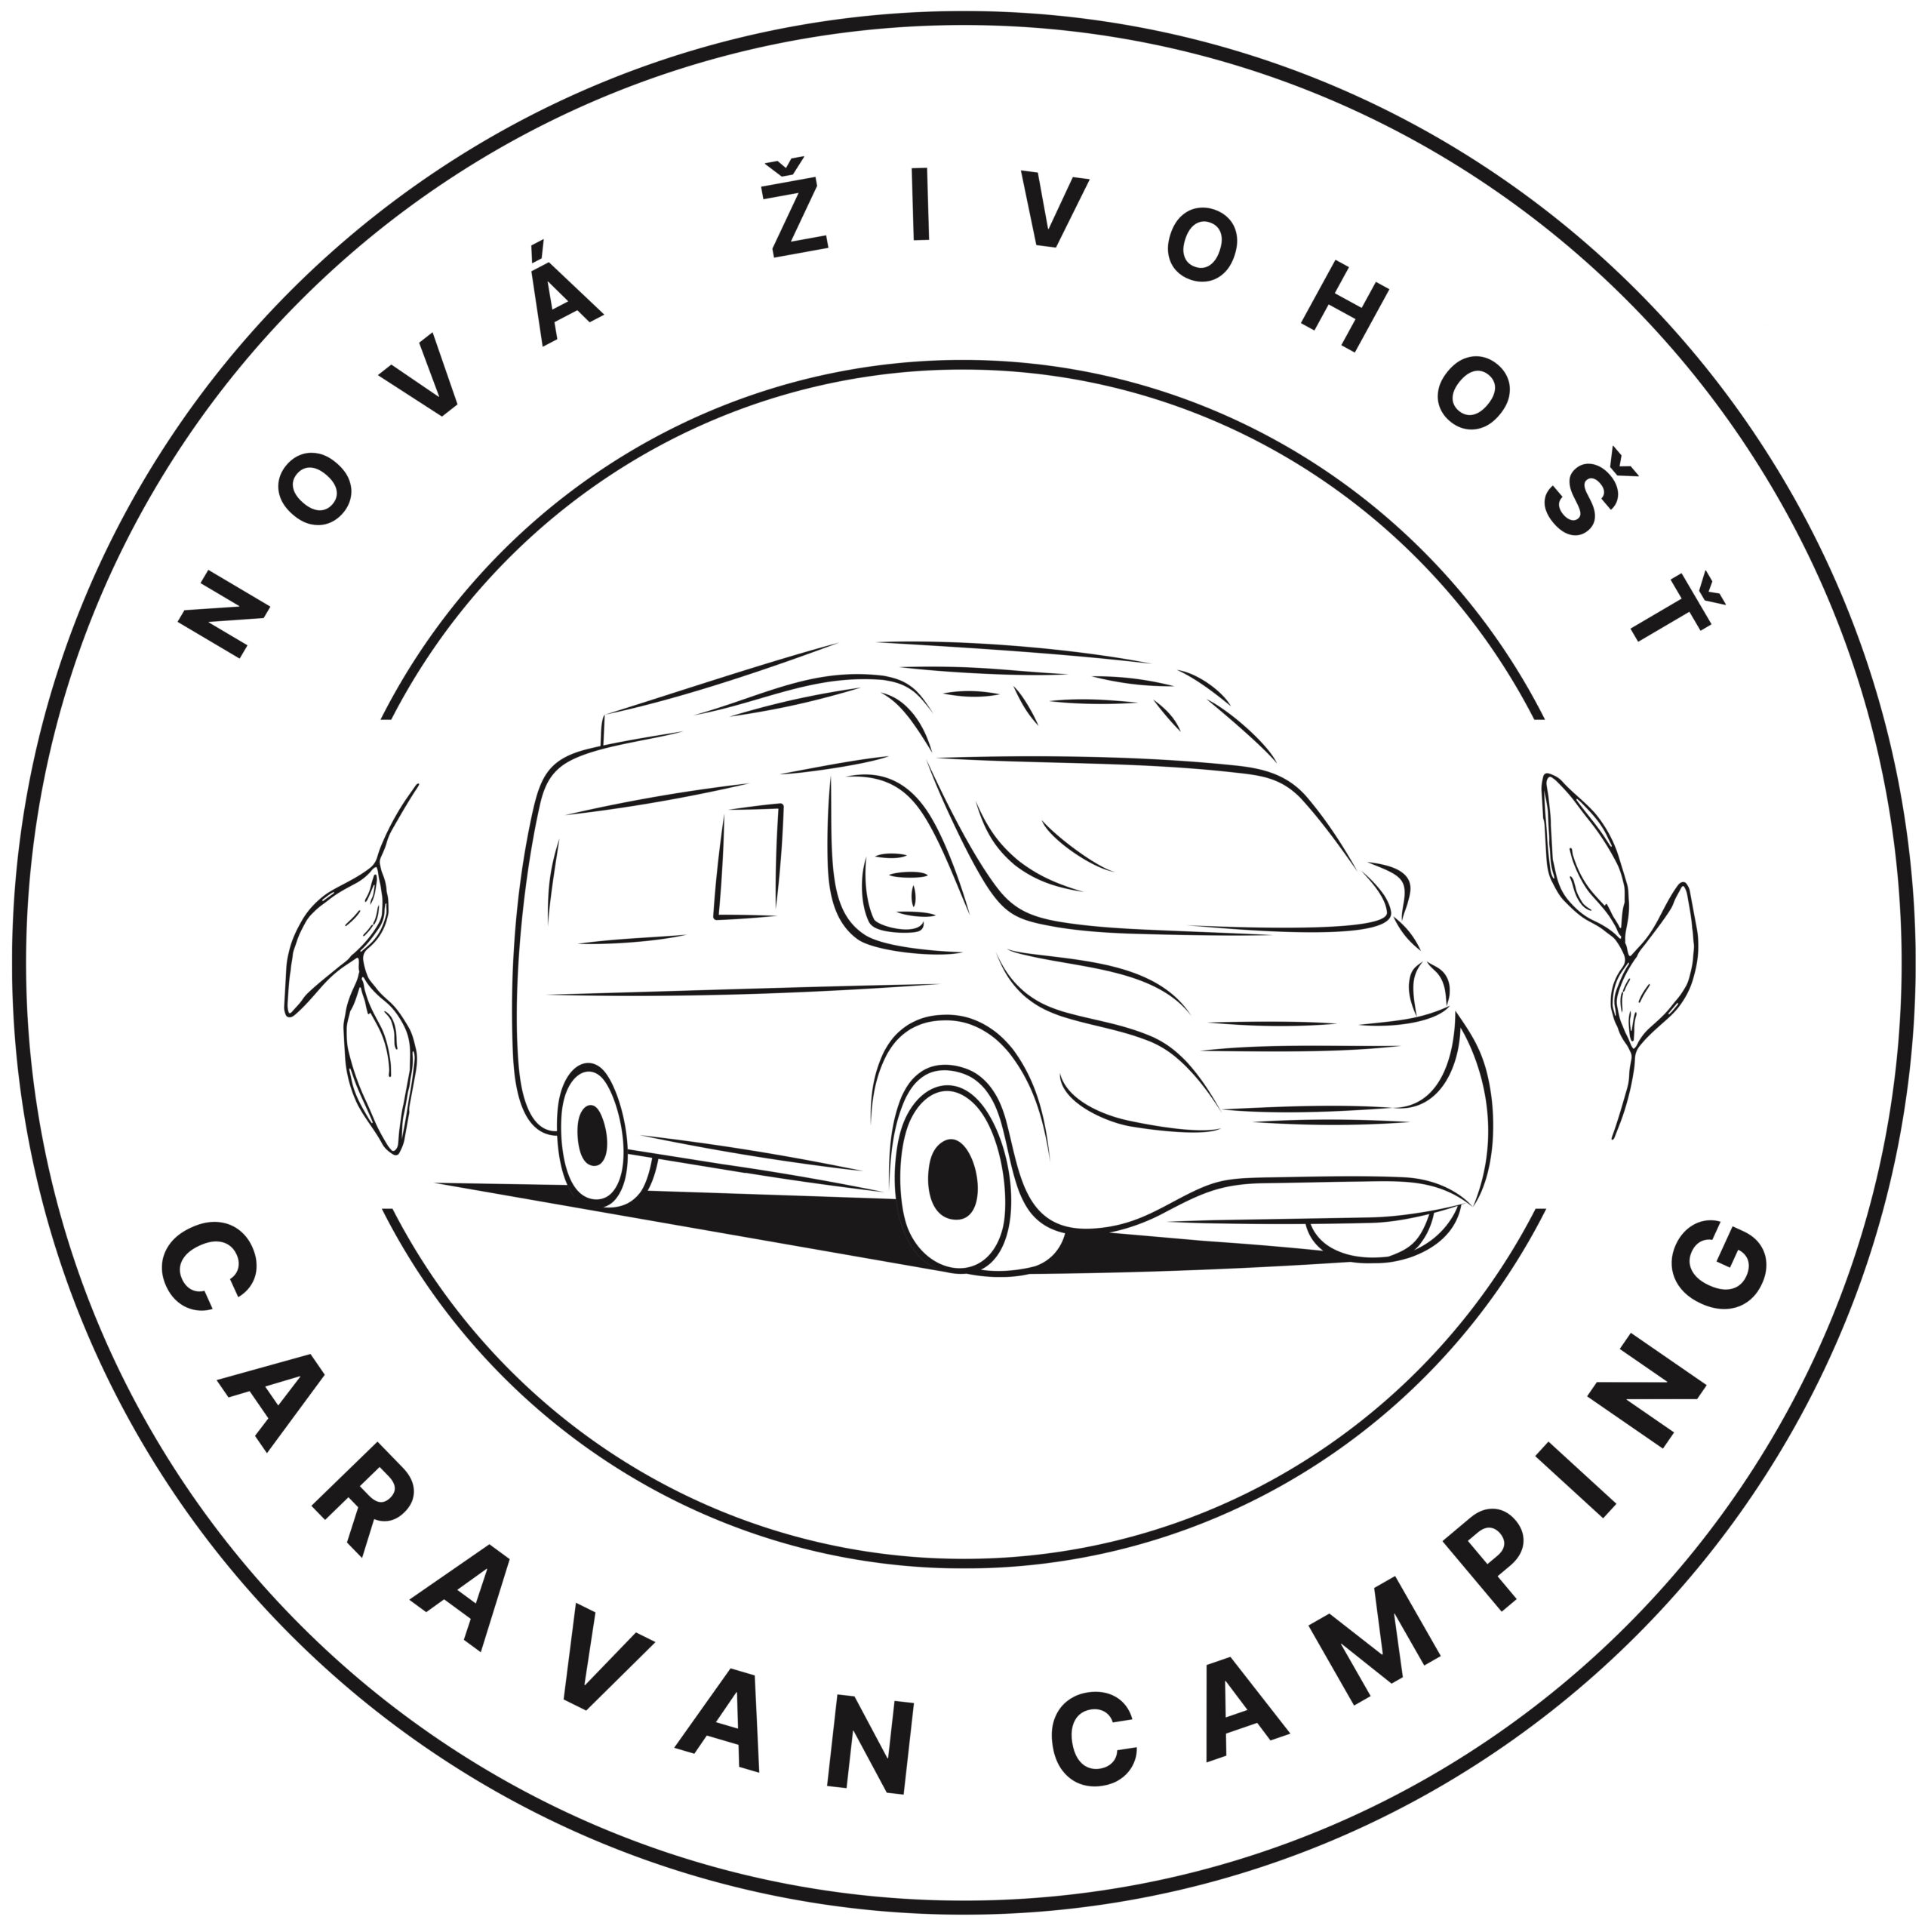 Caravan camping Nová Živohošť